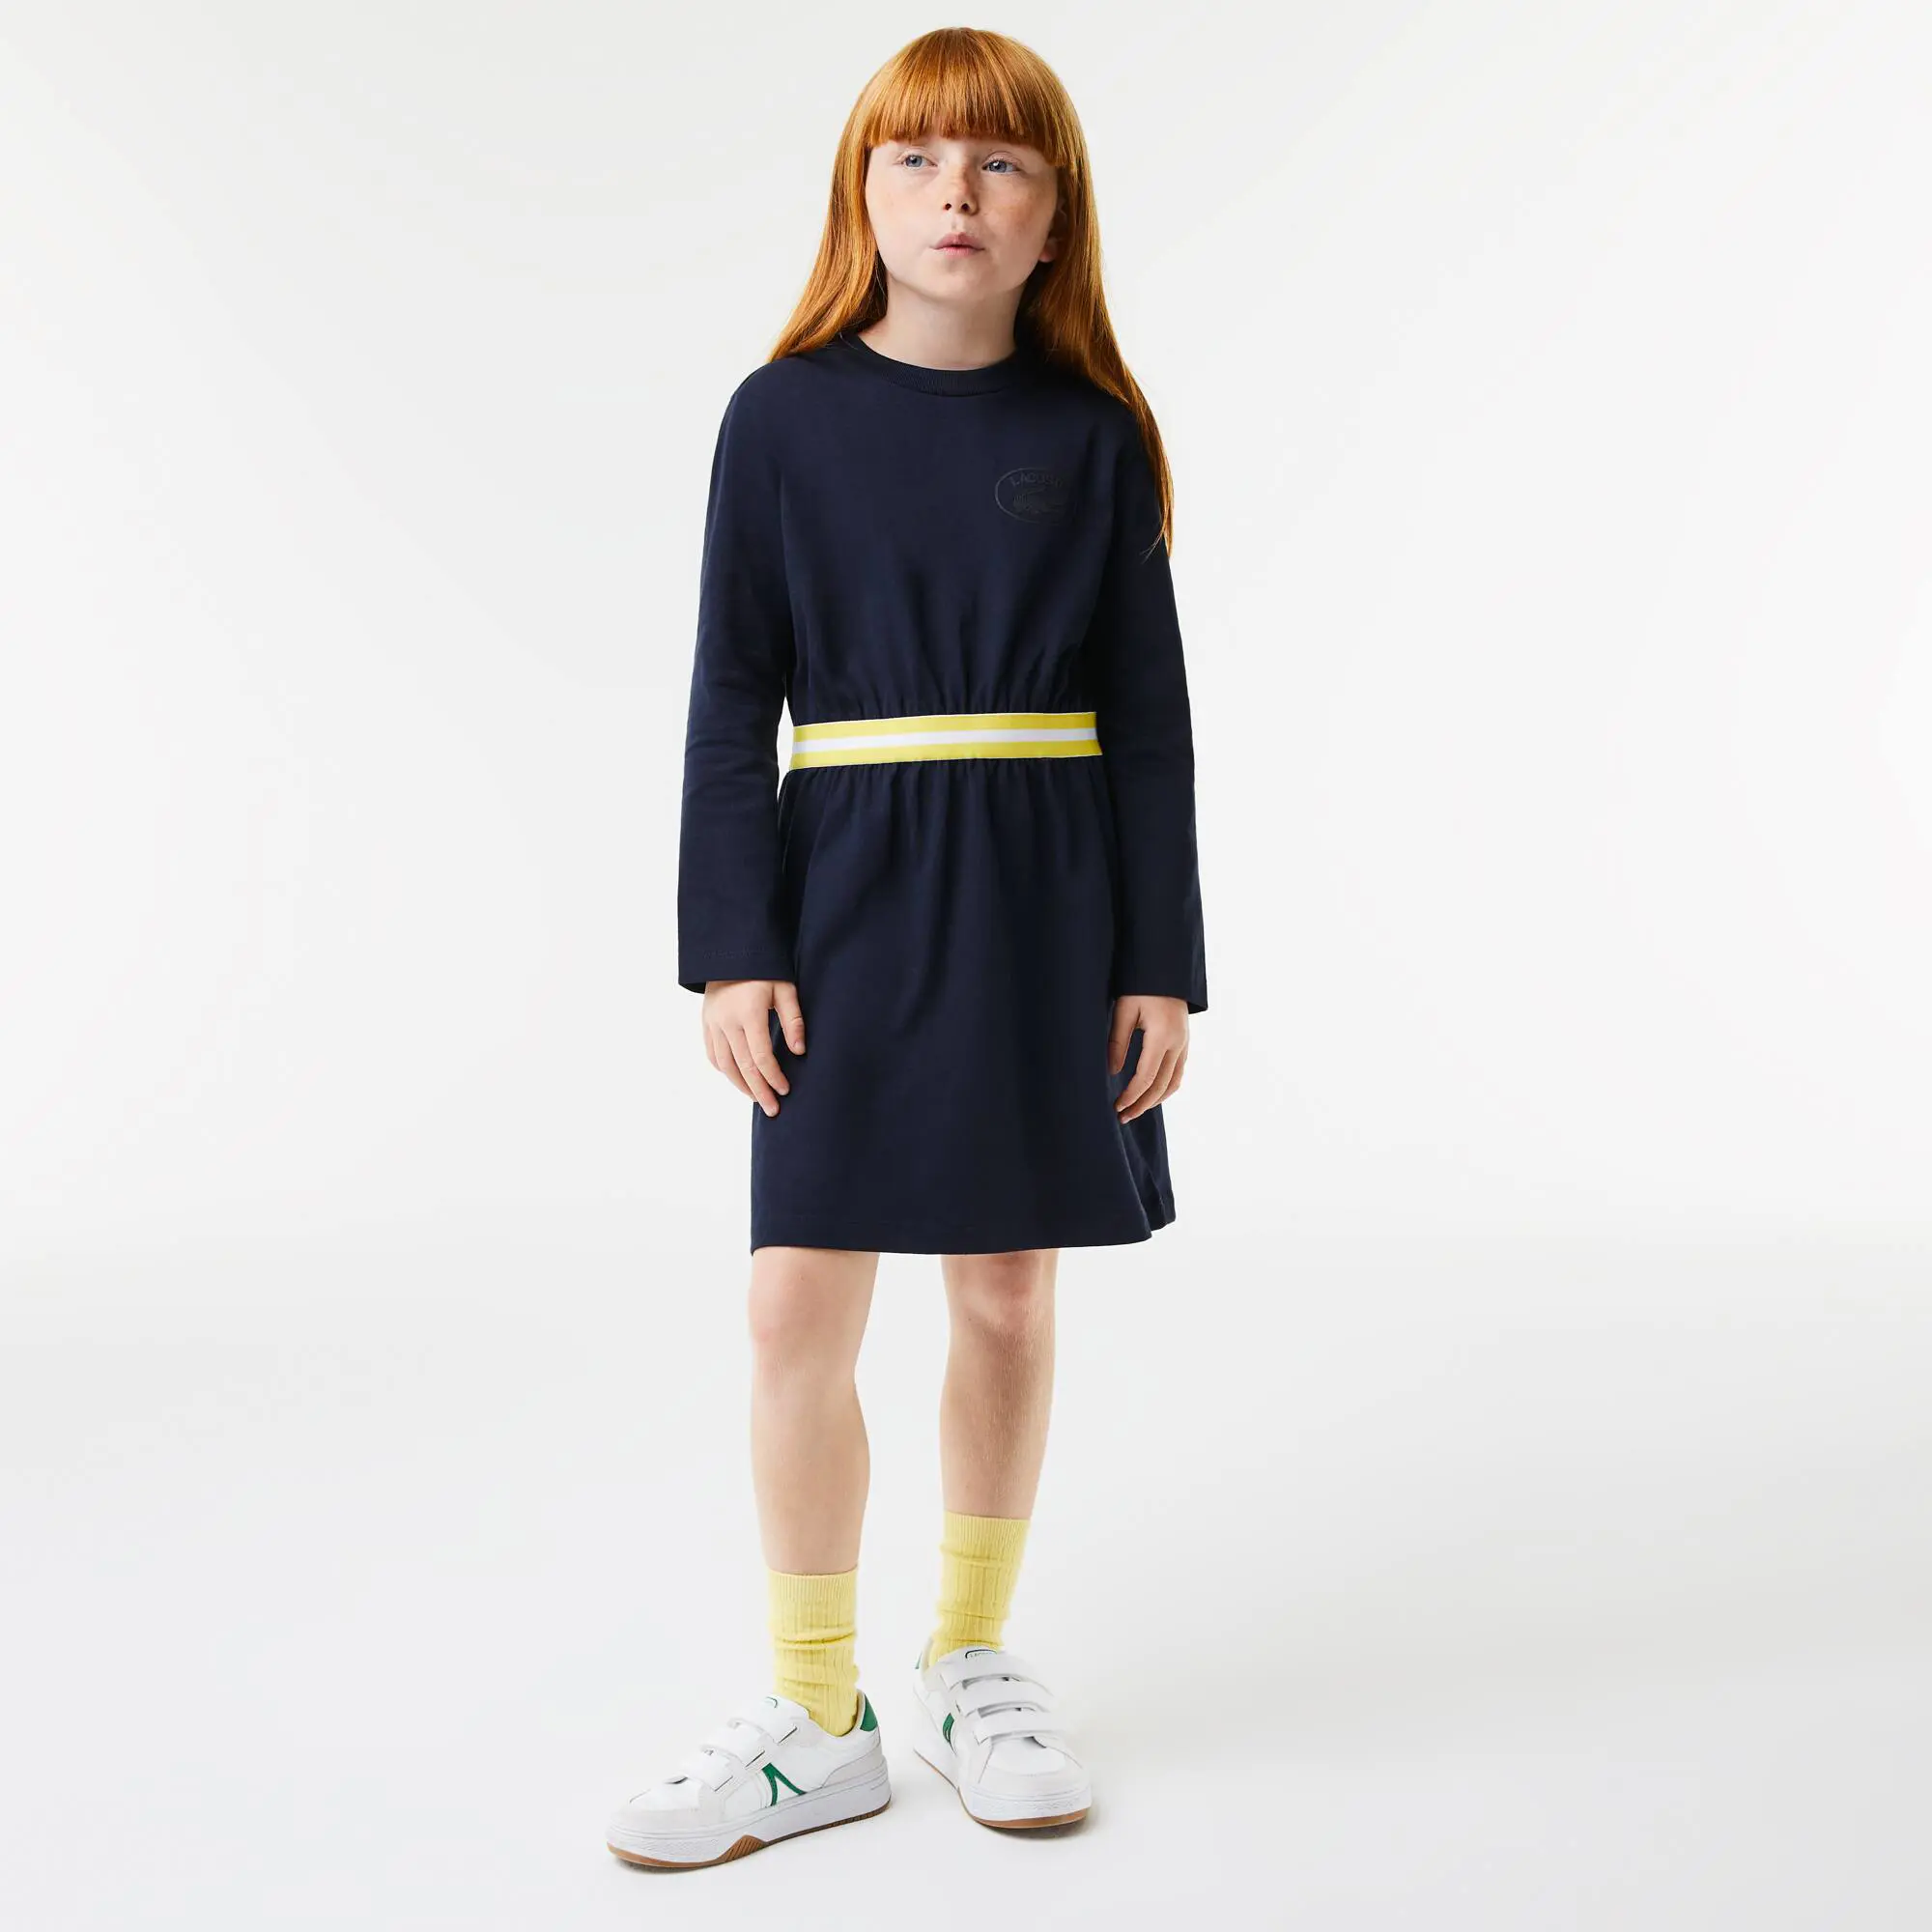 Lacoste Vestido de niña Lacoste en tejido de punto de algodón con cintura a contraste. 1